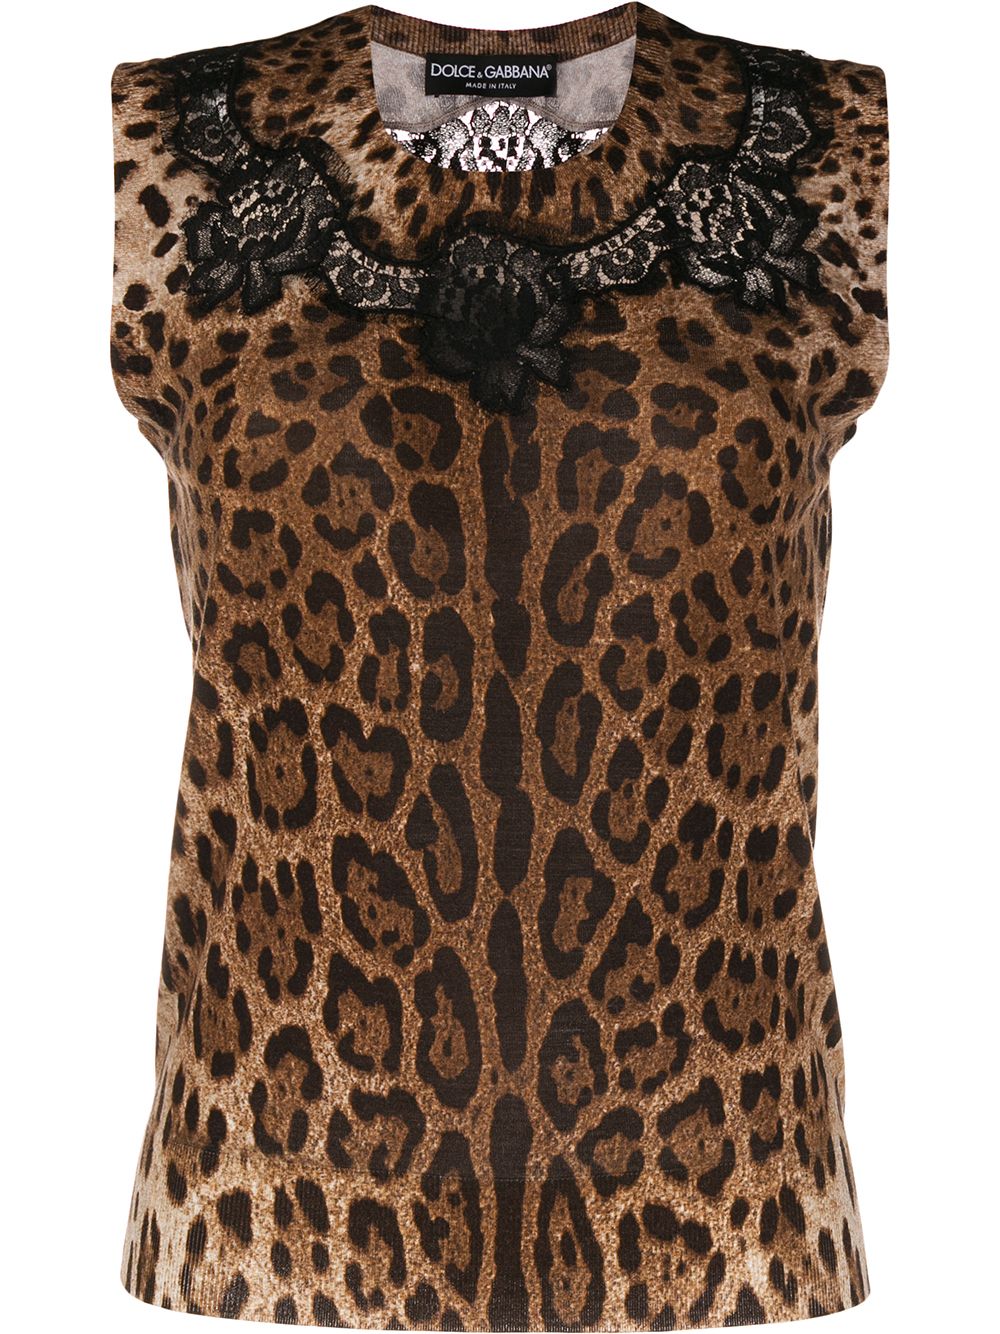 фото Dolce & Gabbana топ с леопардовым принтом и кружевом